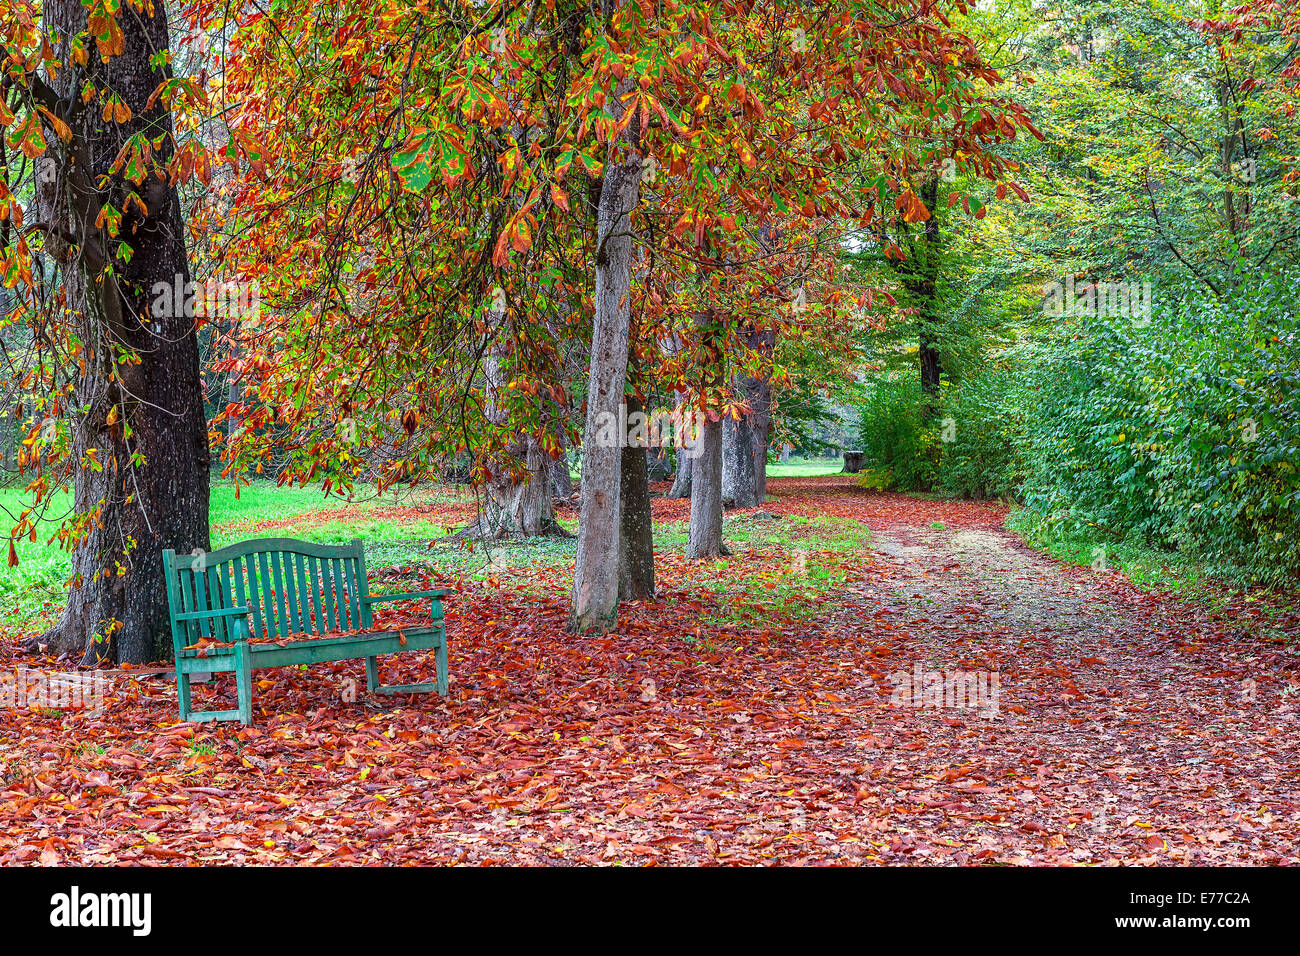 Banc solitaire sur le sol recouvert de feuilles d'automne rouge tombé dans le parc de Racconigi, Italie. Banque D'Images